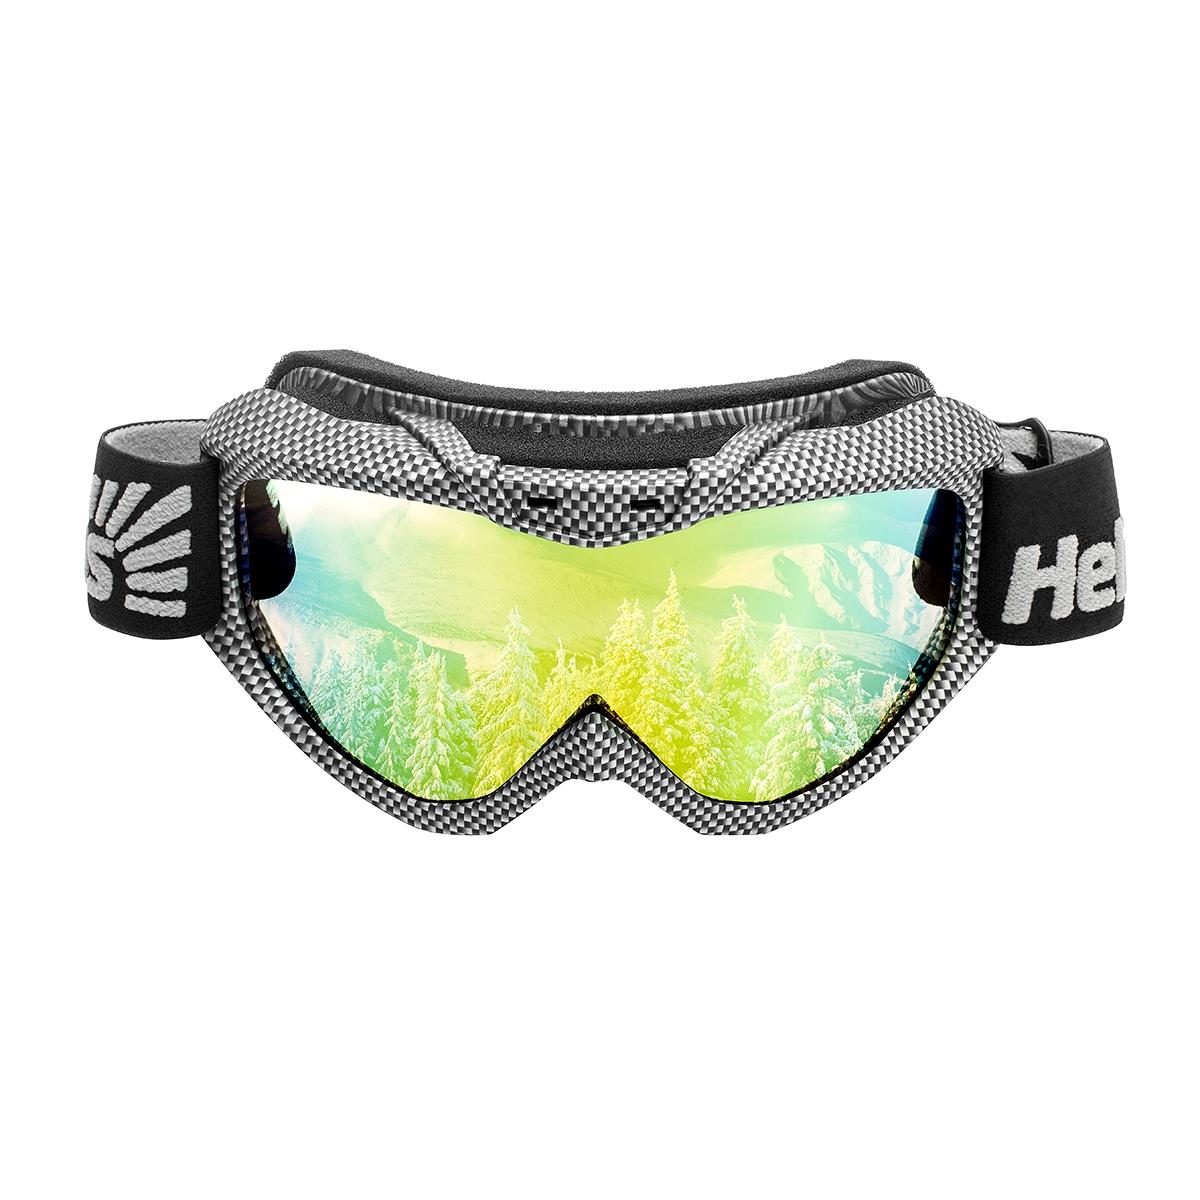 Очки горнолыжные HS-MT-001 Helios очки для плавания взрослые uv защита